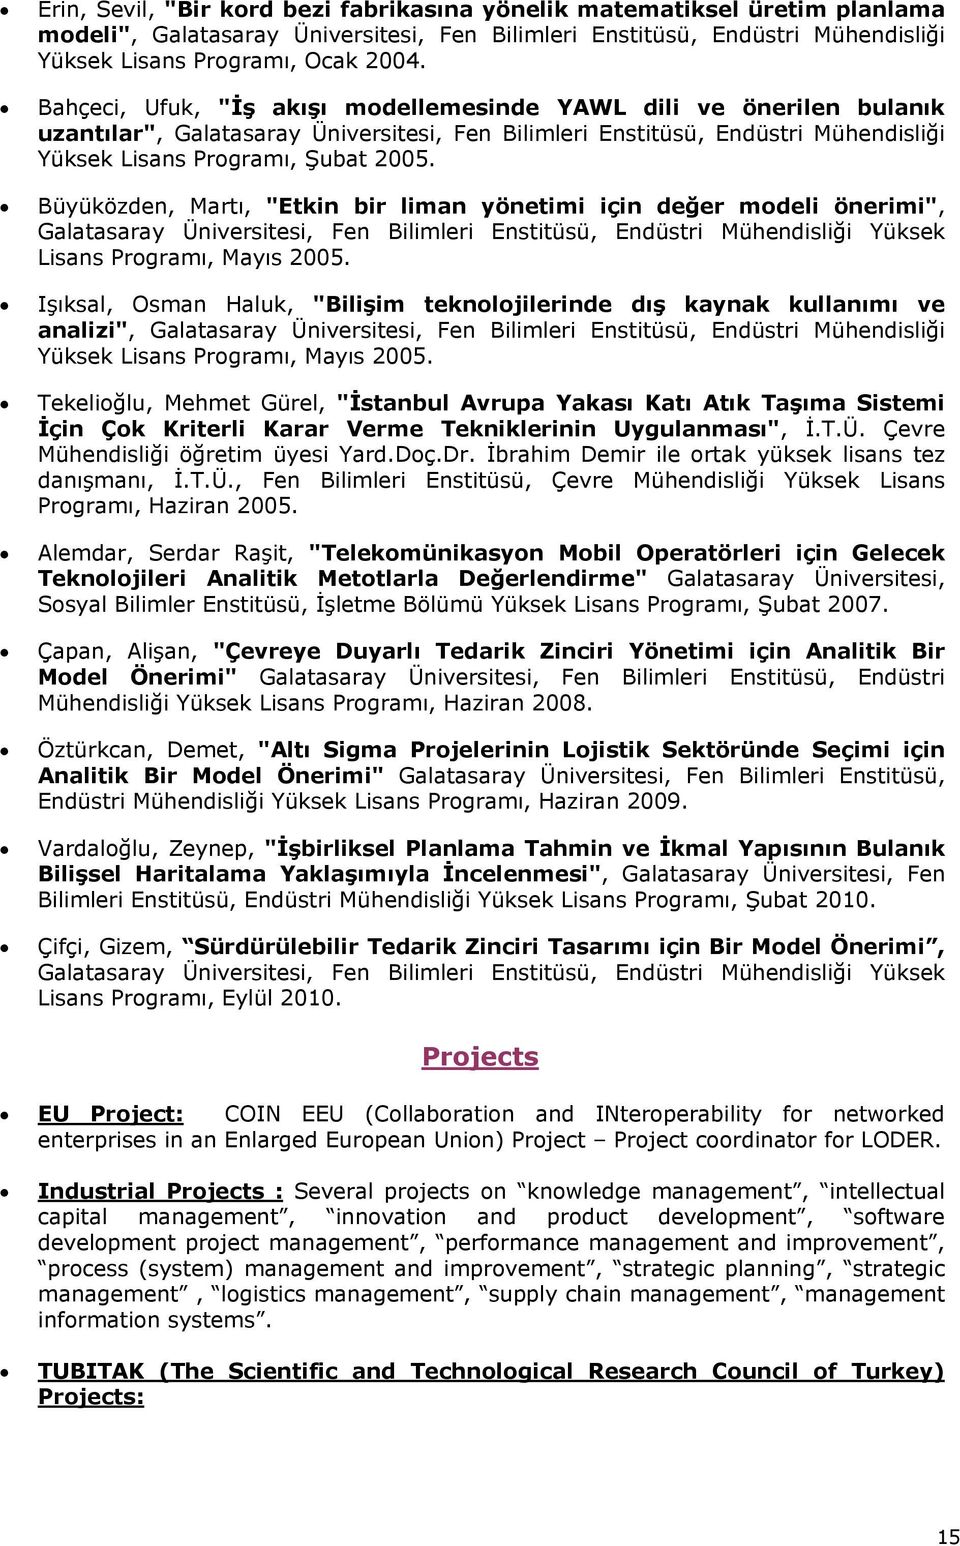 Büyüközden, Martı, "Etkin bir liman yönetimi için değer modeli önerimi", Galatasaray Üniversitesi, Fen Bilimleri Enstitüsü, Endüstri Mühendisliği Yüksek Lisans Programı, Mayıs 2005.